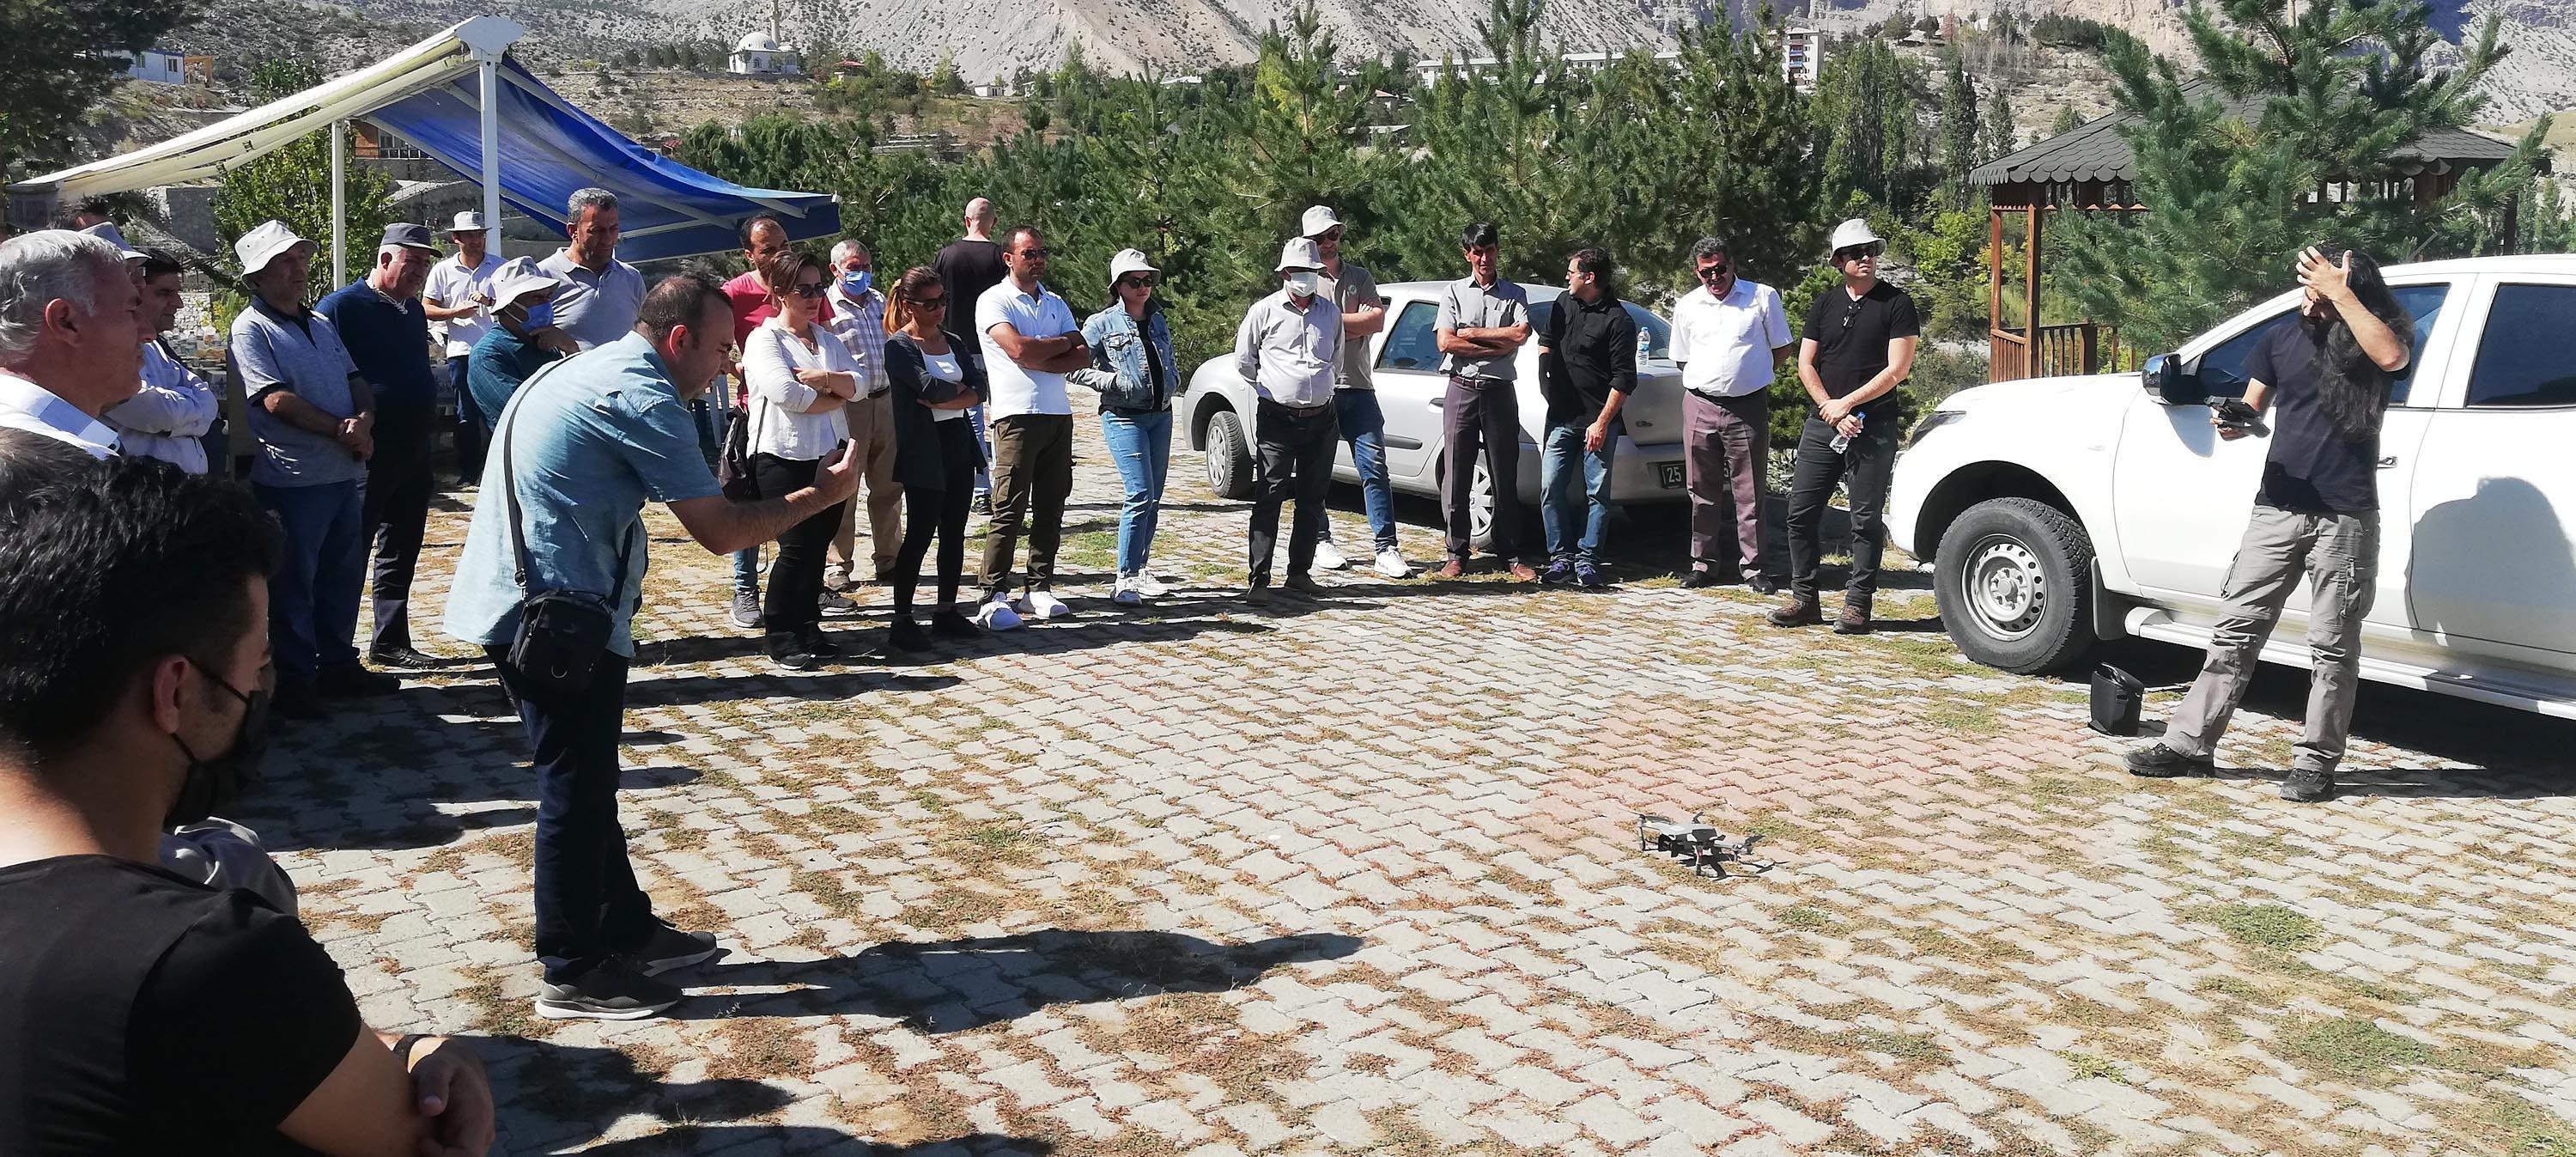 Kaçak avcılığın önüne geçmek için doğanın bekçilerine dron ve fotokapan eğitimi verdiler